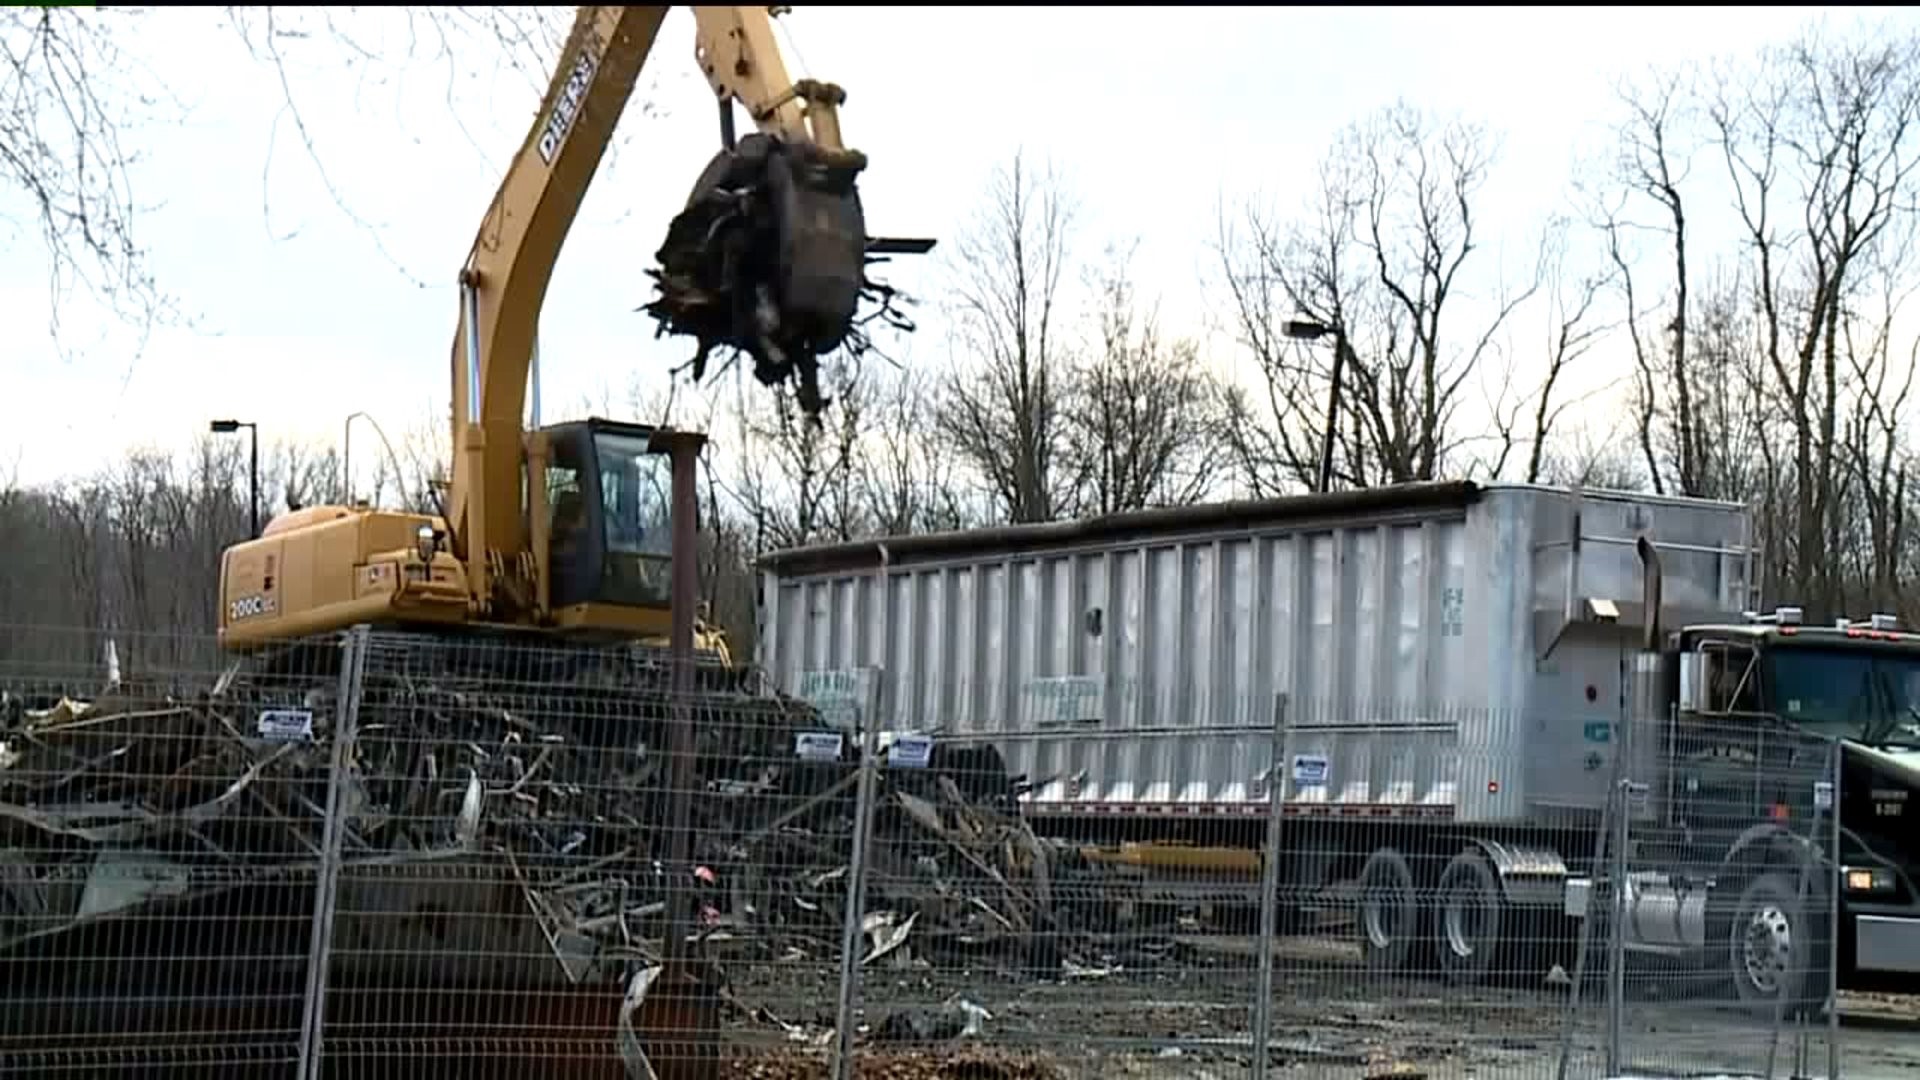 Movie Theater Demolition Underway